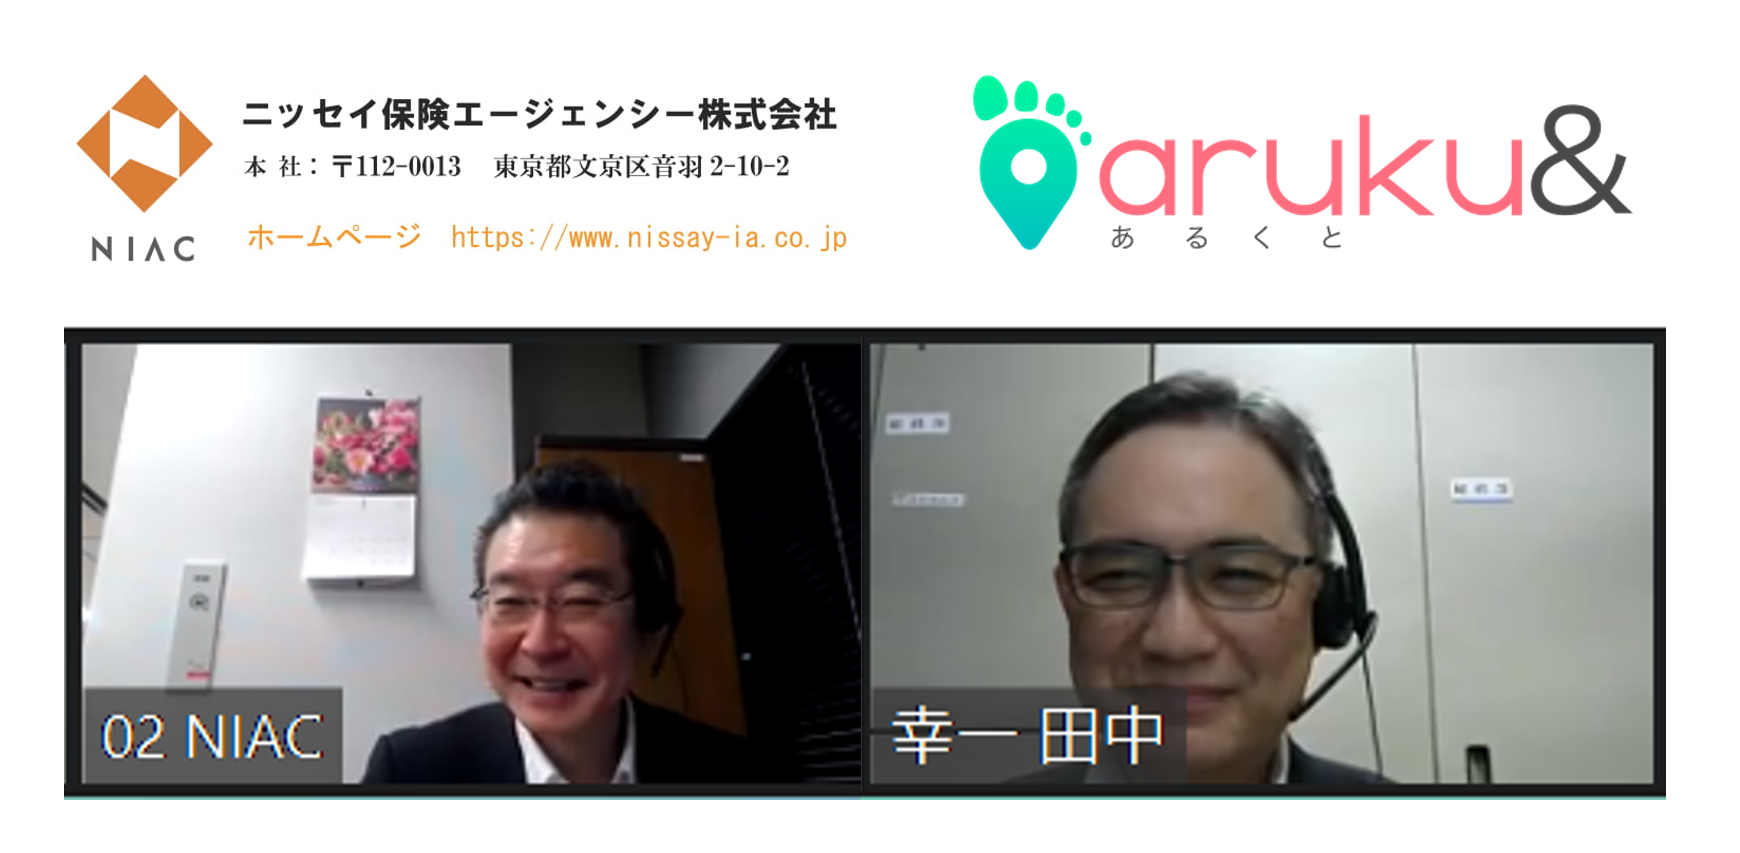 「aruku&」、ニッセイ保険エージェンシーの成功事例ページを公開